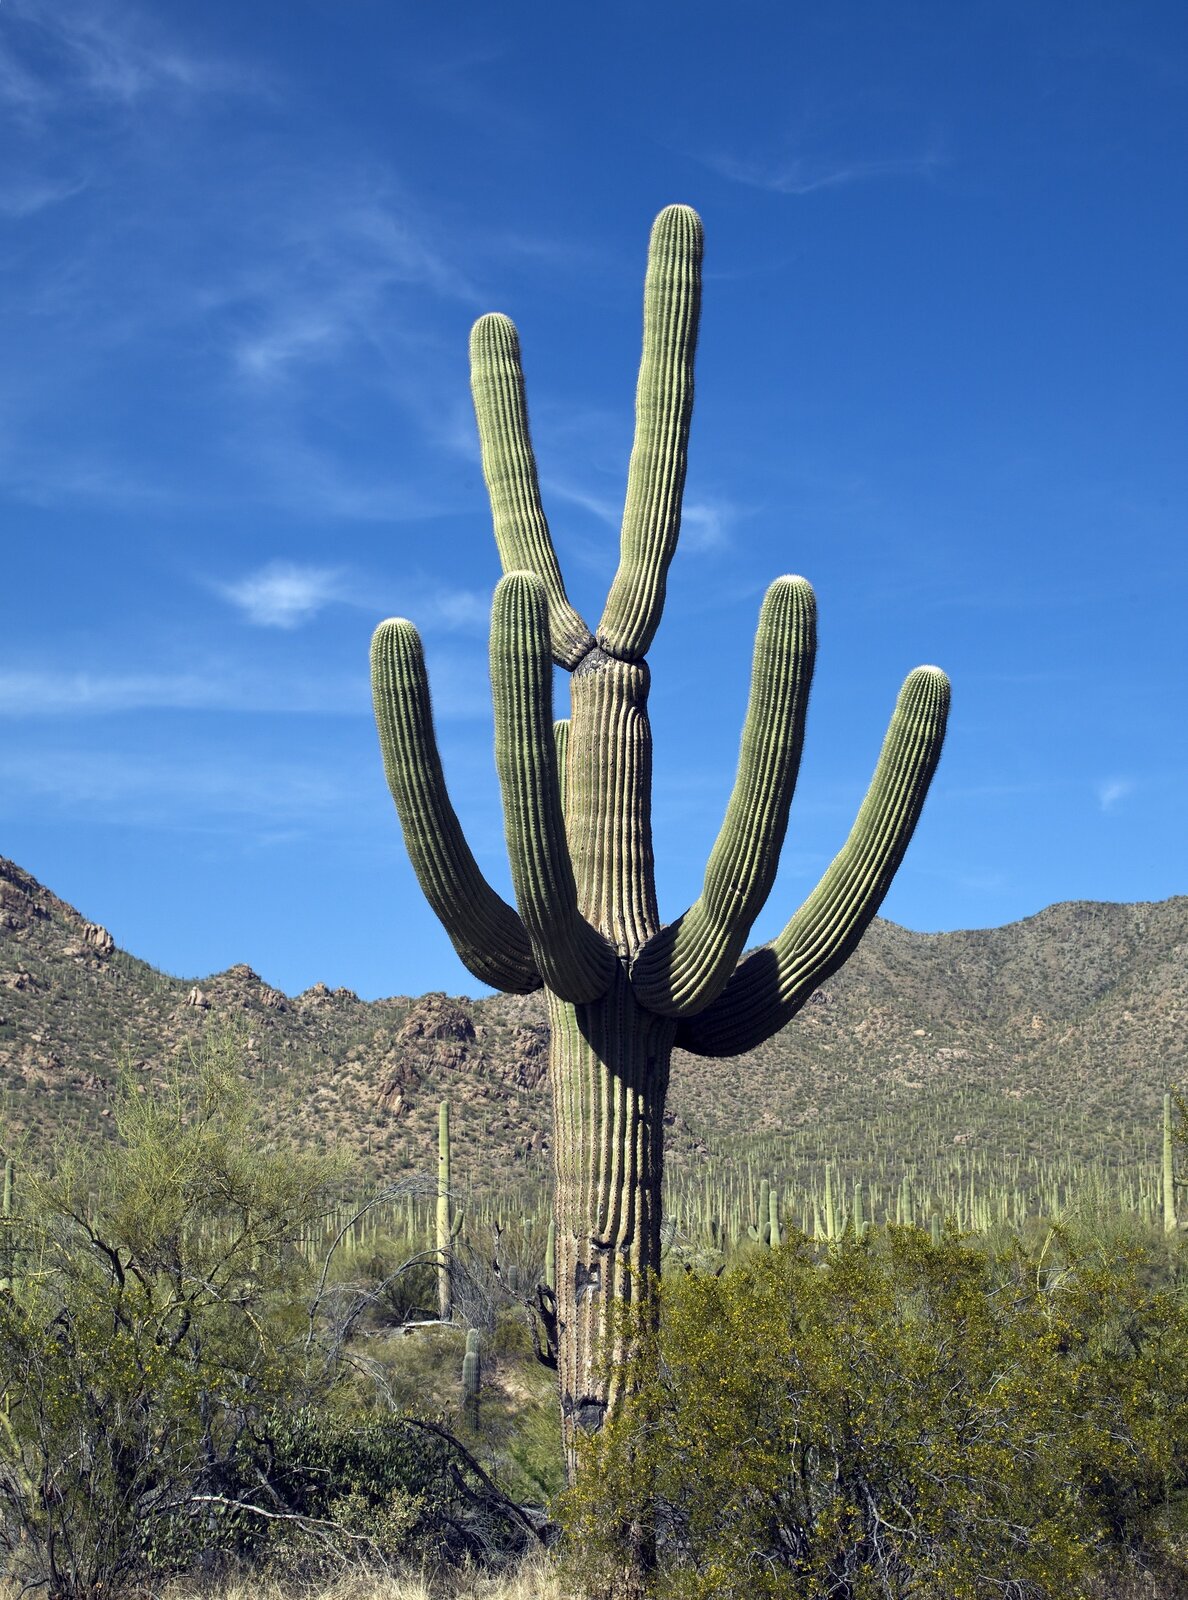 Fotografia prezentuje wysokiego kaktusa. Kaktus zbudowany jest z grubej, owalnej, mięsistej łodygi z kilkoma podobnymi odgałęzieniami bocznymi, wyrastającymi powyżej połowy jego wysokości. Kaktus pokryty jest cierniami. Dookoła niego rosną drzewa sięgające jednej trzeciej jego wysokości. W tle widoczne góry.